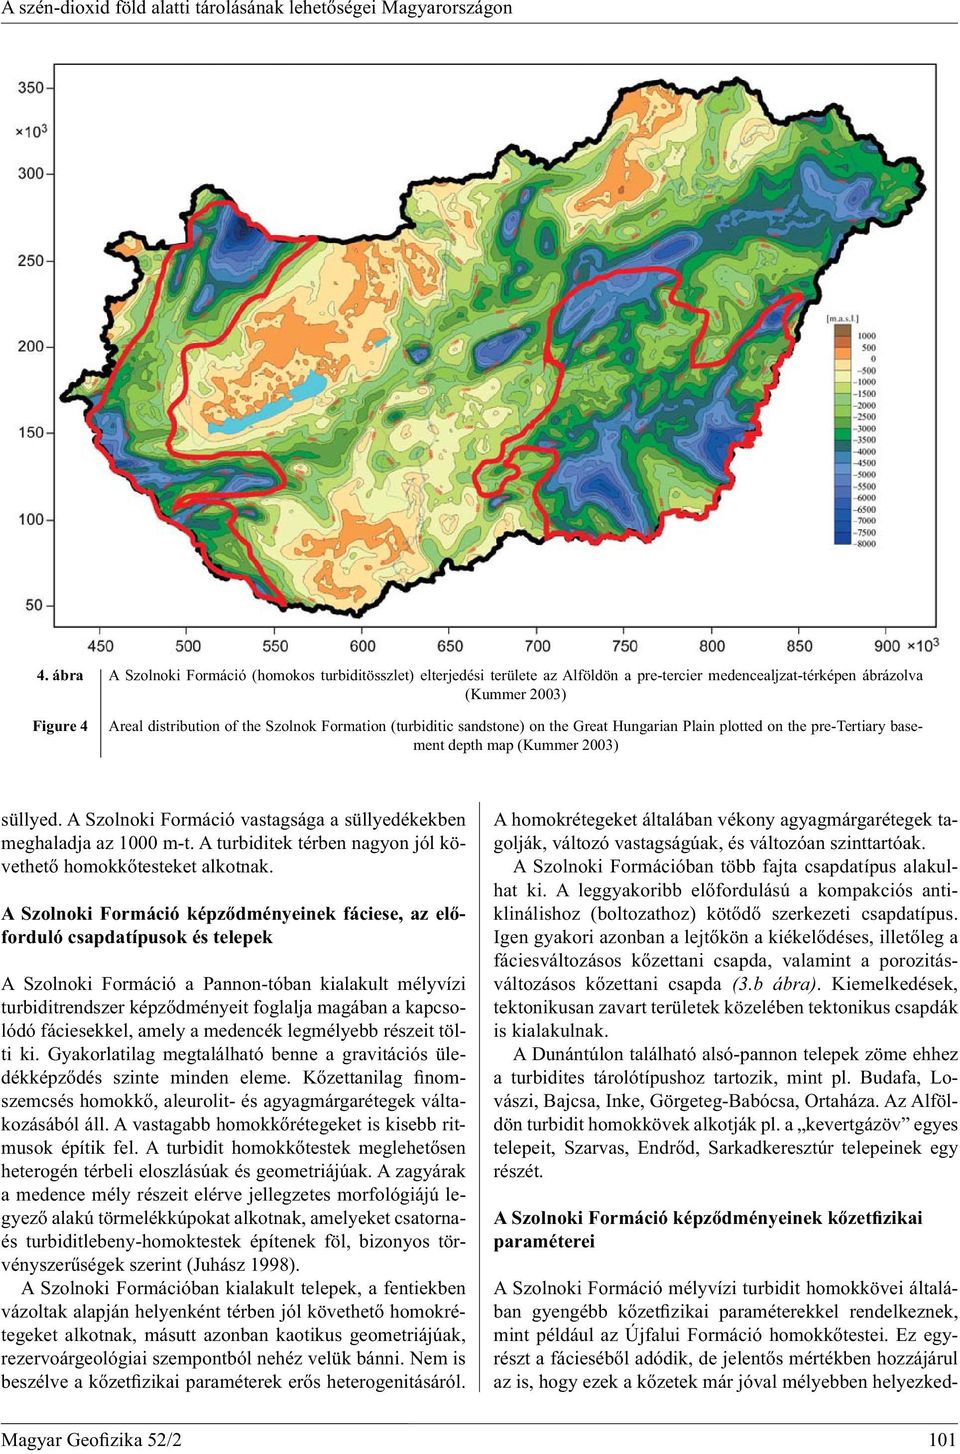 (turbiditic sandstone) on the Great Hungarian Plain plotted on the pre-tertiary basement depth map (Kummer 2003) süllyed. A Szolnoki Formáció vastagsága a süllyedékekben meghaladja az 1000 m-t.